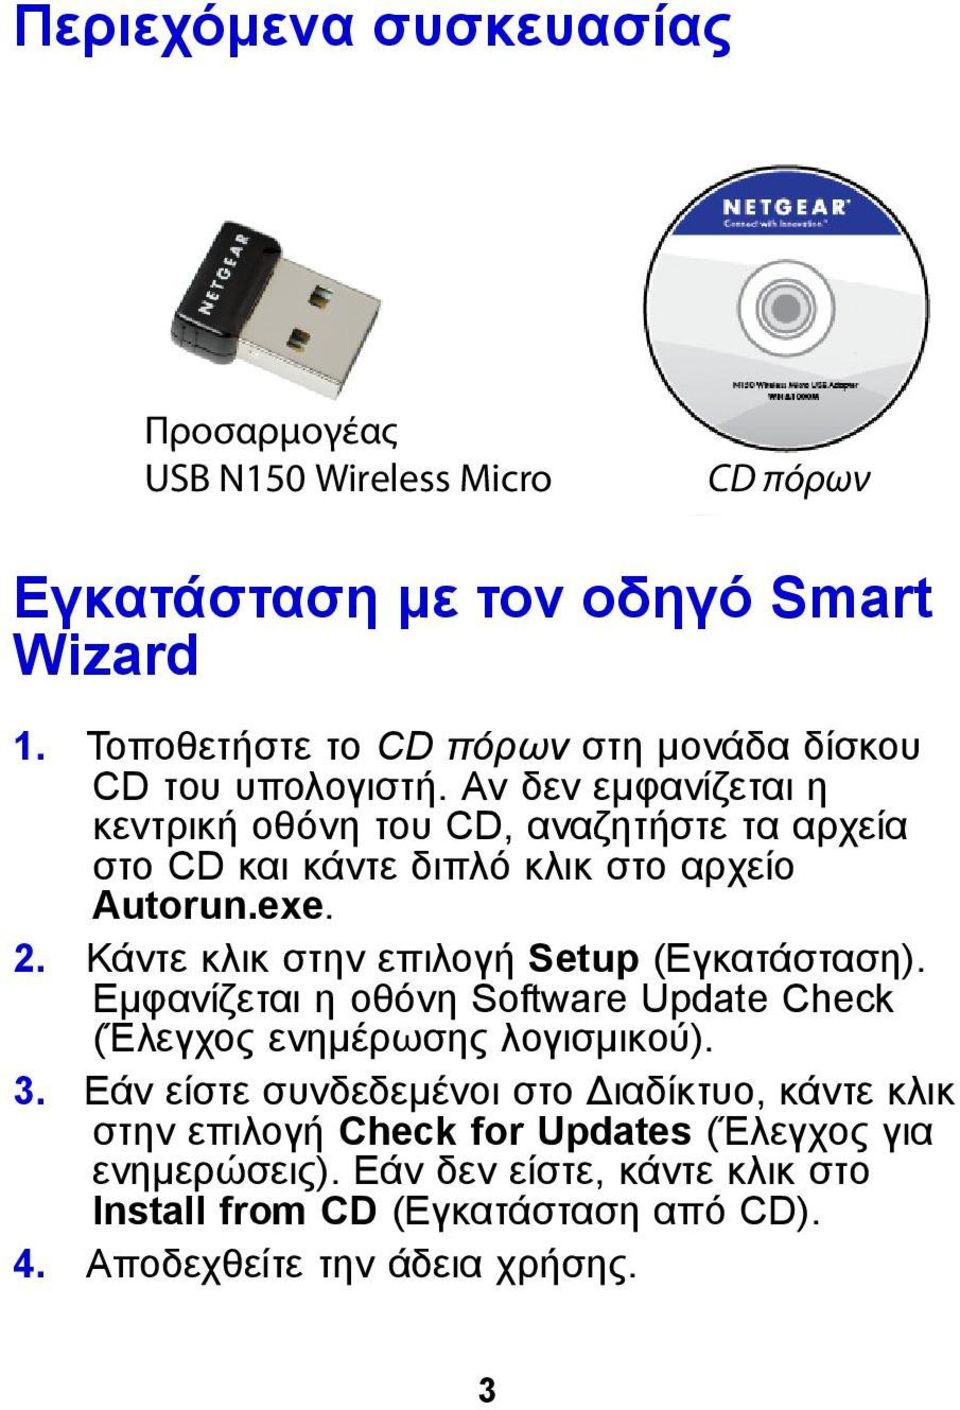 Αν δεν εμφανίζεται η κεντρική οθόνη του CD, αναζητήστε τα αρχεία στο CD και κάντε διπλό κλικ στο αρχείο Autorun.exe. 2.